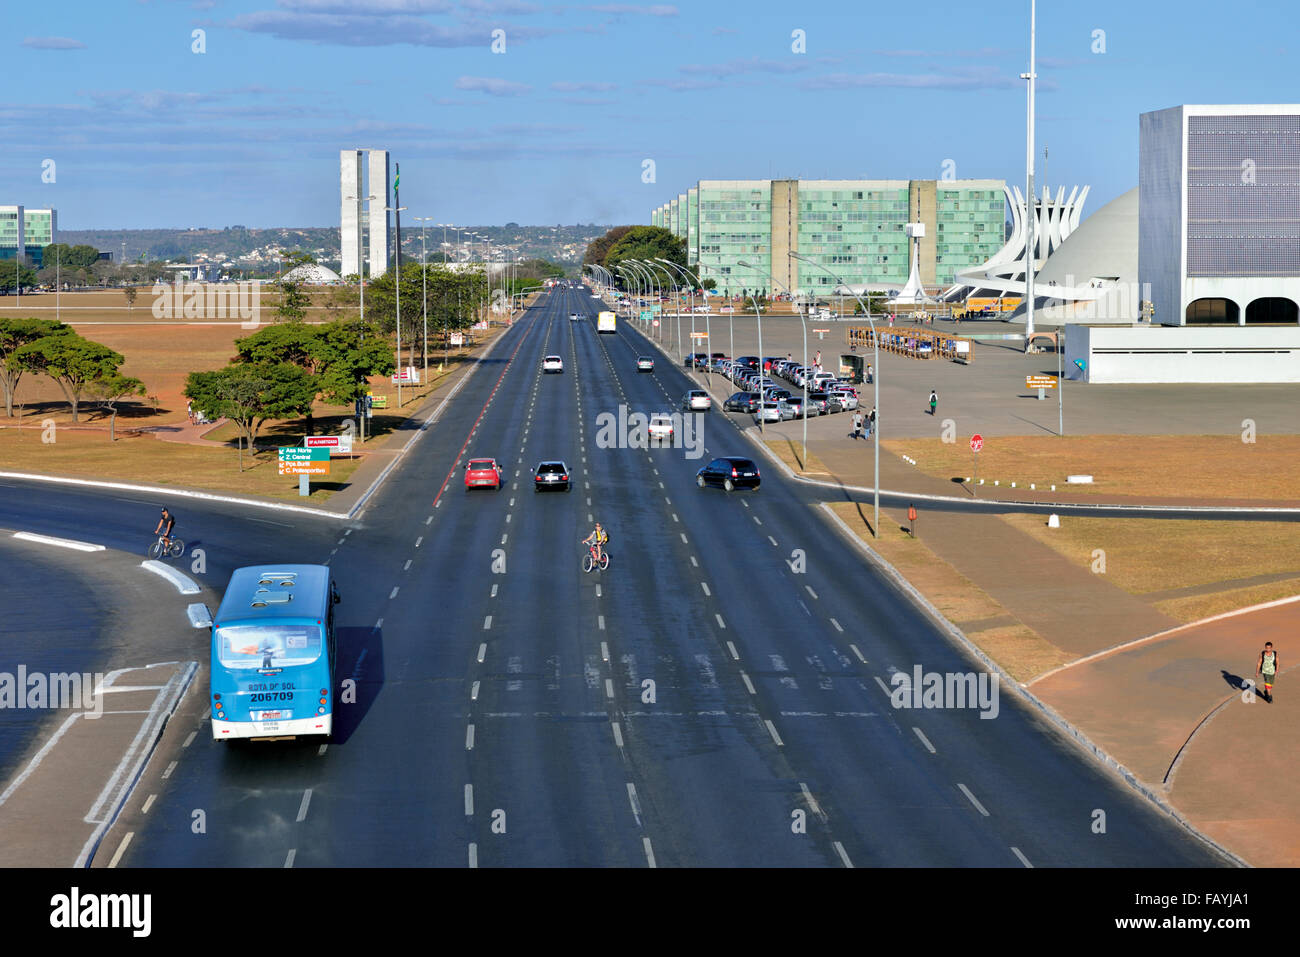 Brasilien, Brasilia: Blick auf central Avenue Esplanada Dos Ministérios an einem ruhigen Sonntag Nachmittag Stockfoto